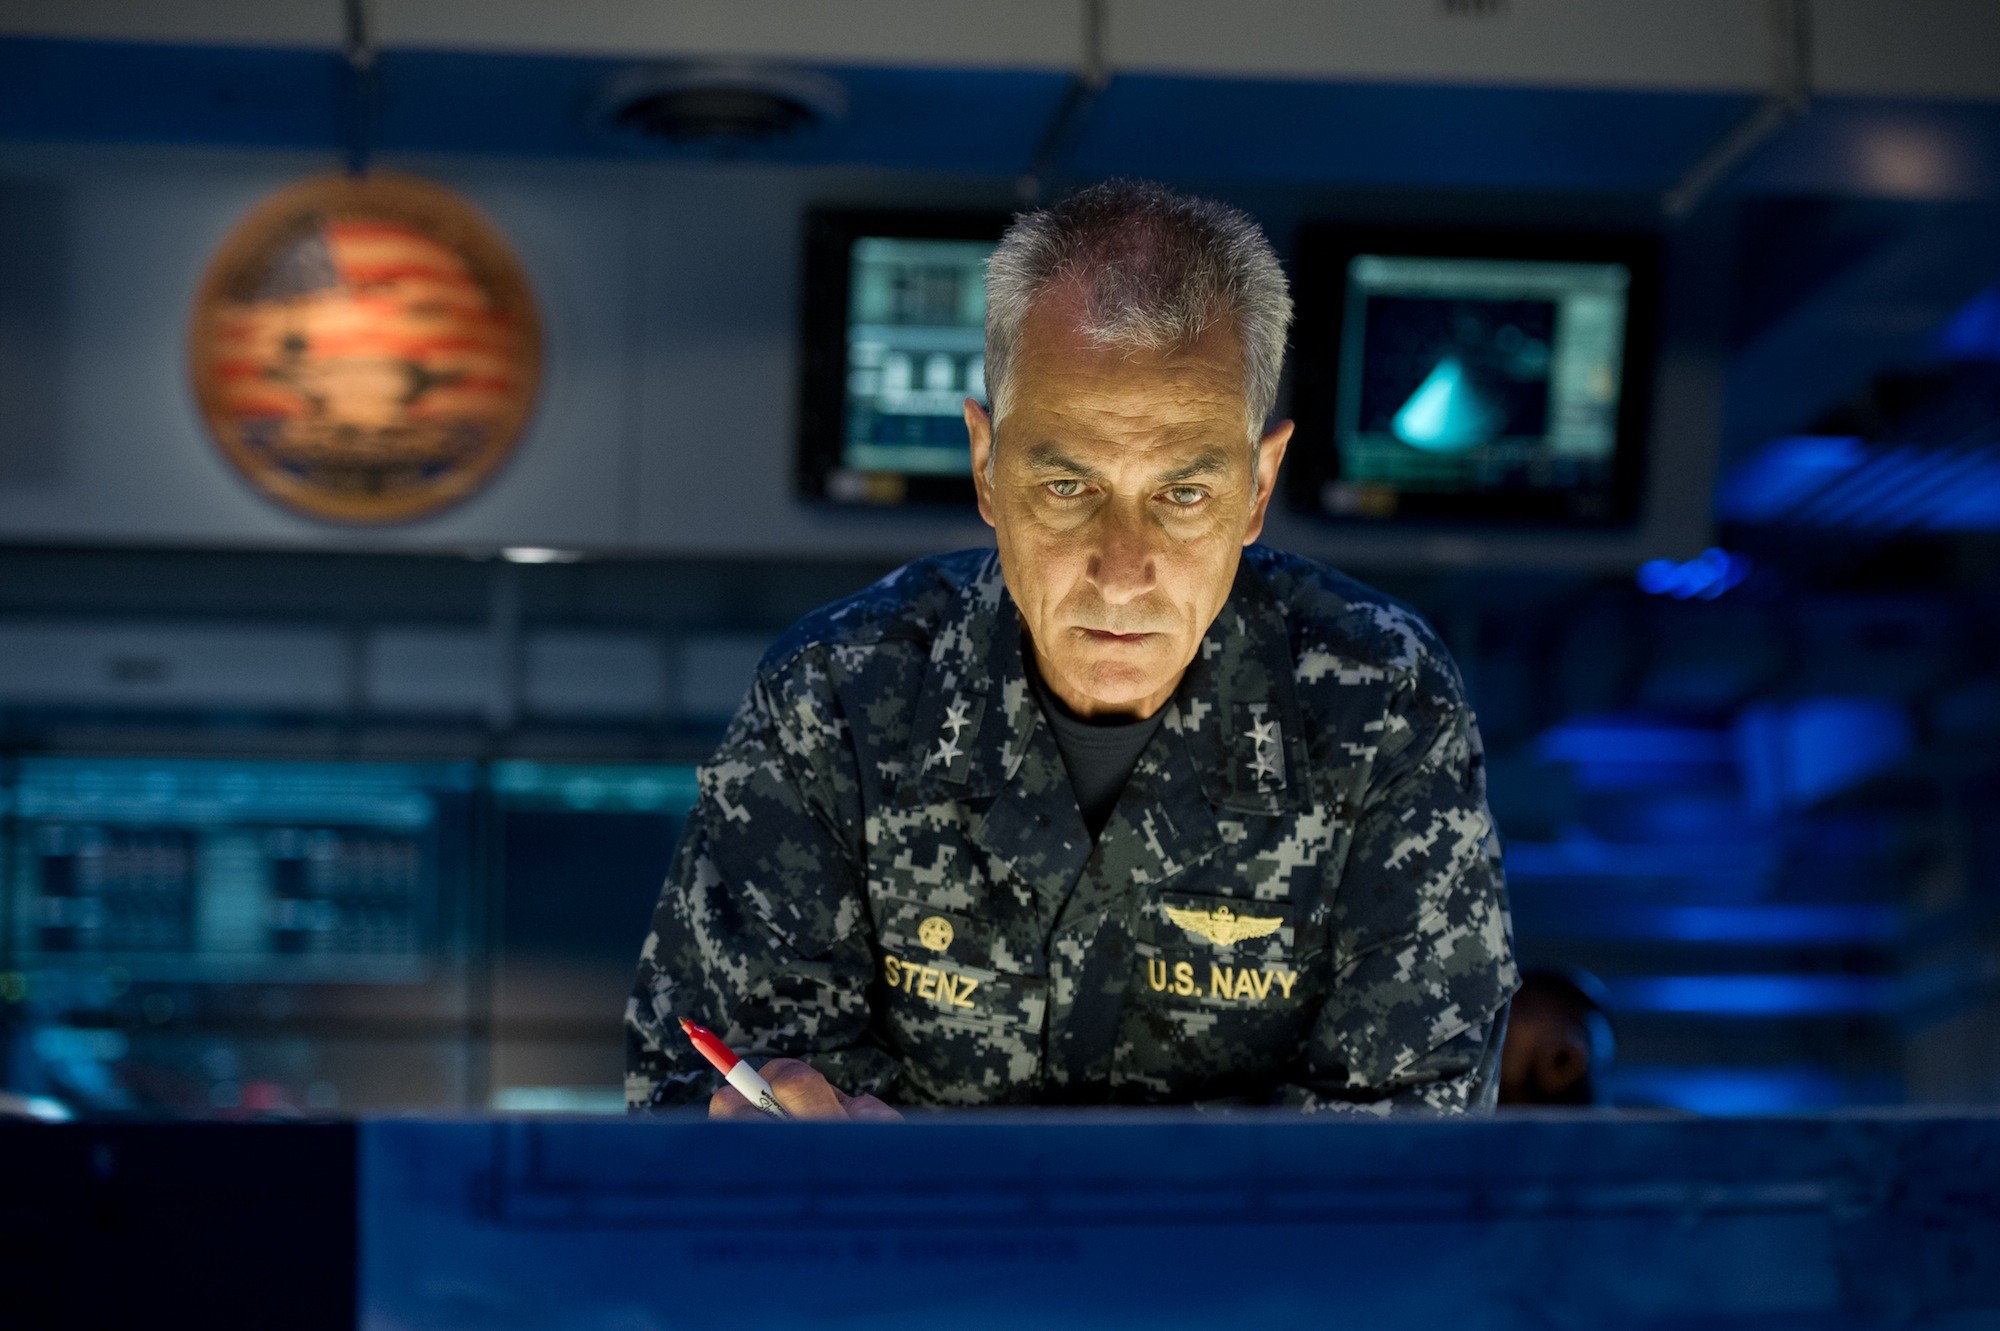 David Strathairn stars as Admiral William Stenz in Warner Bros. Pictures' Godzilla (2014)